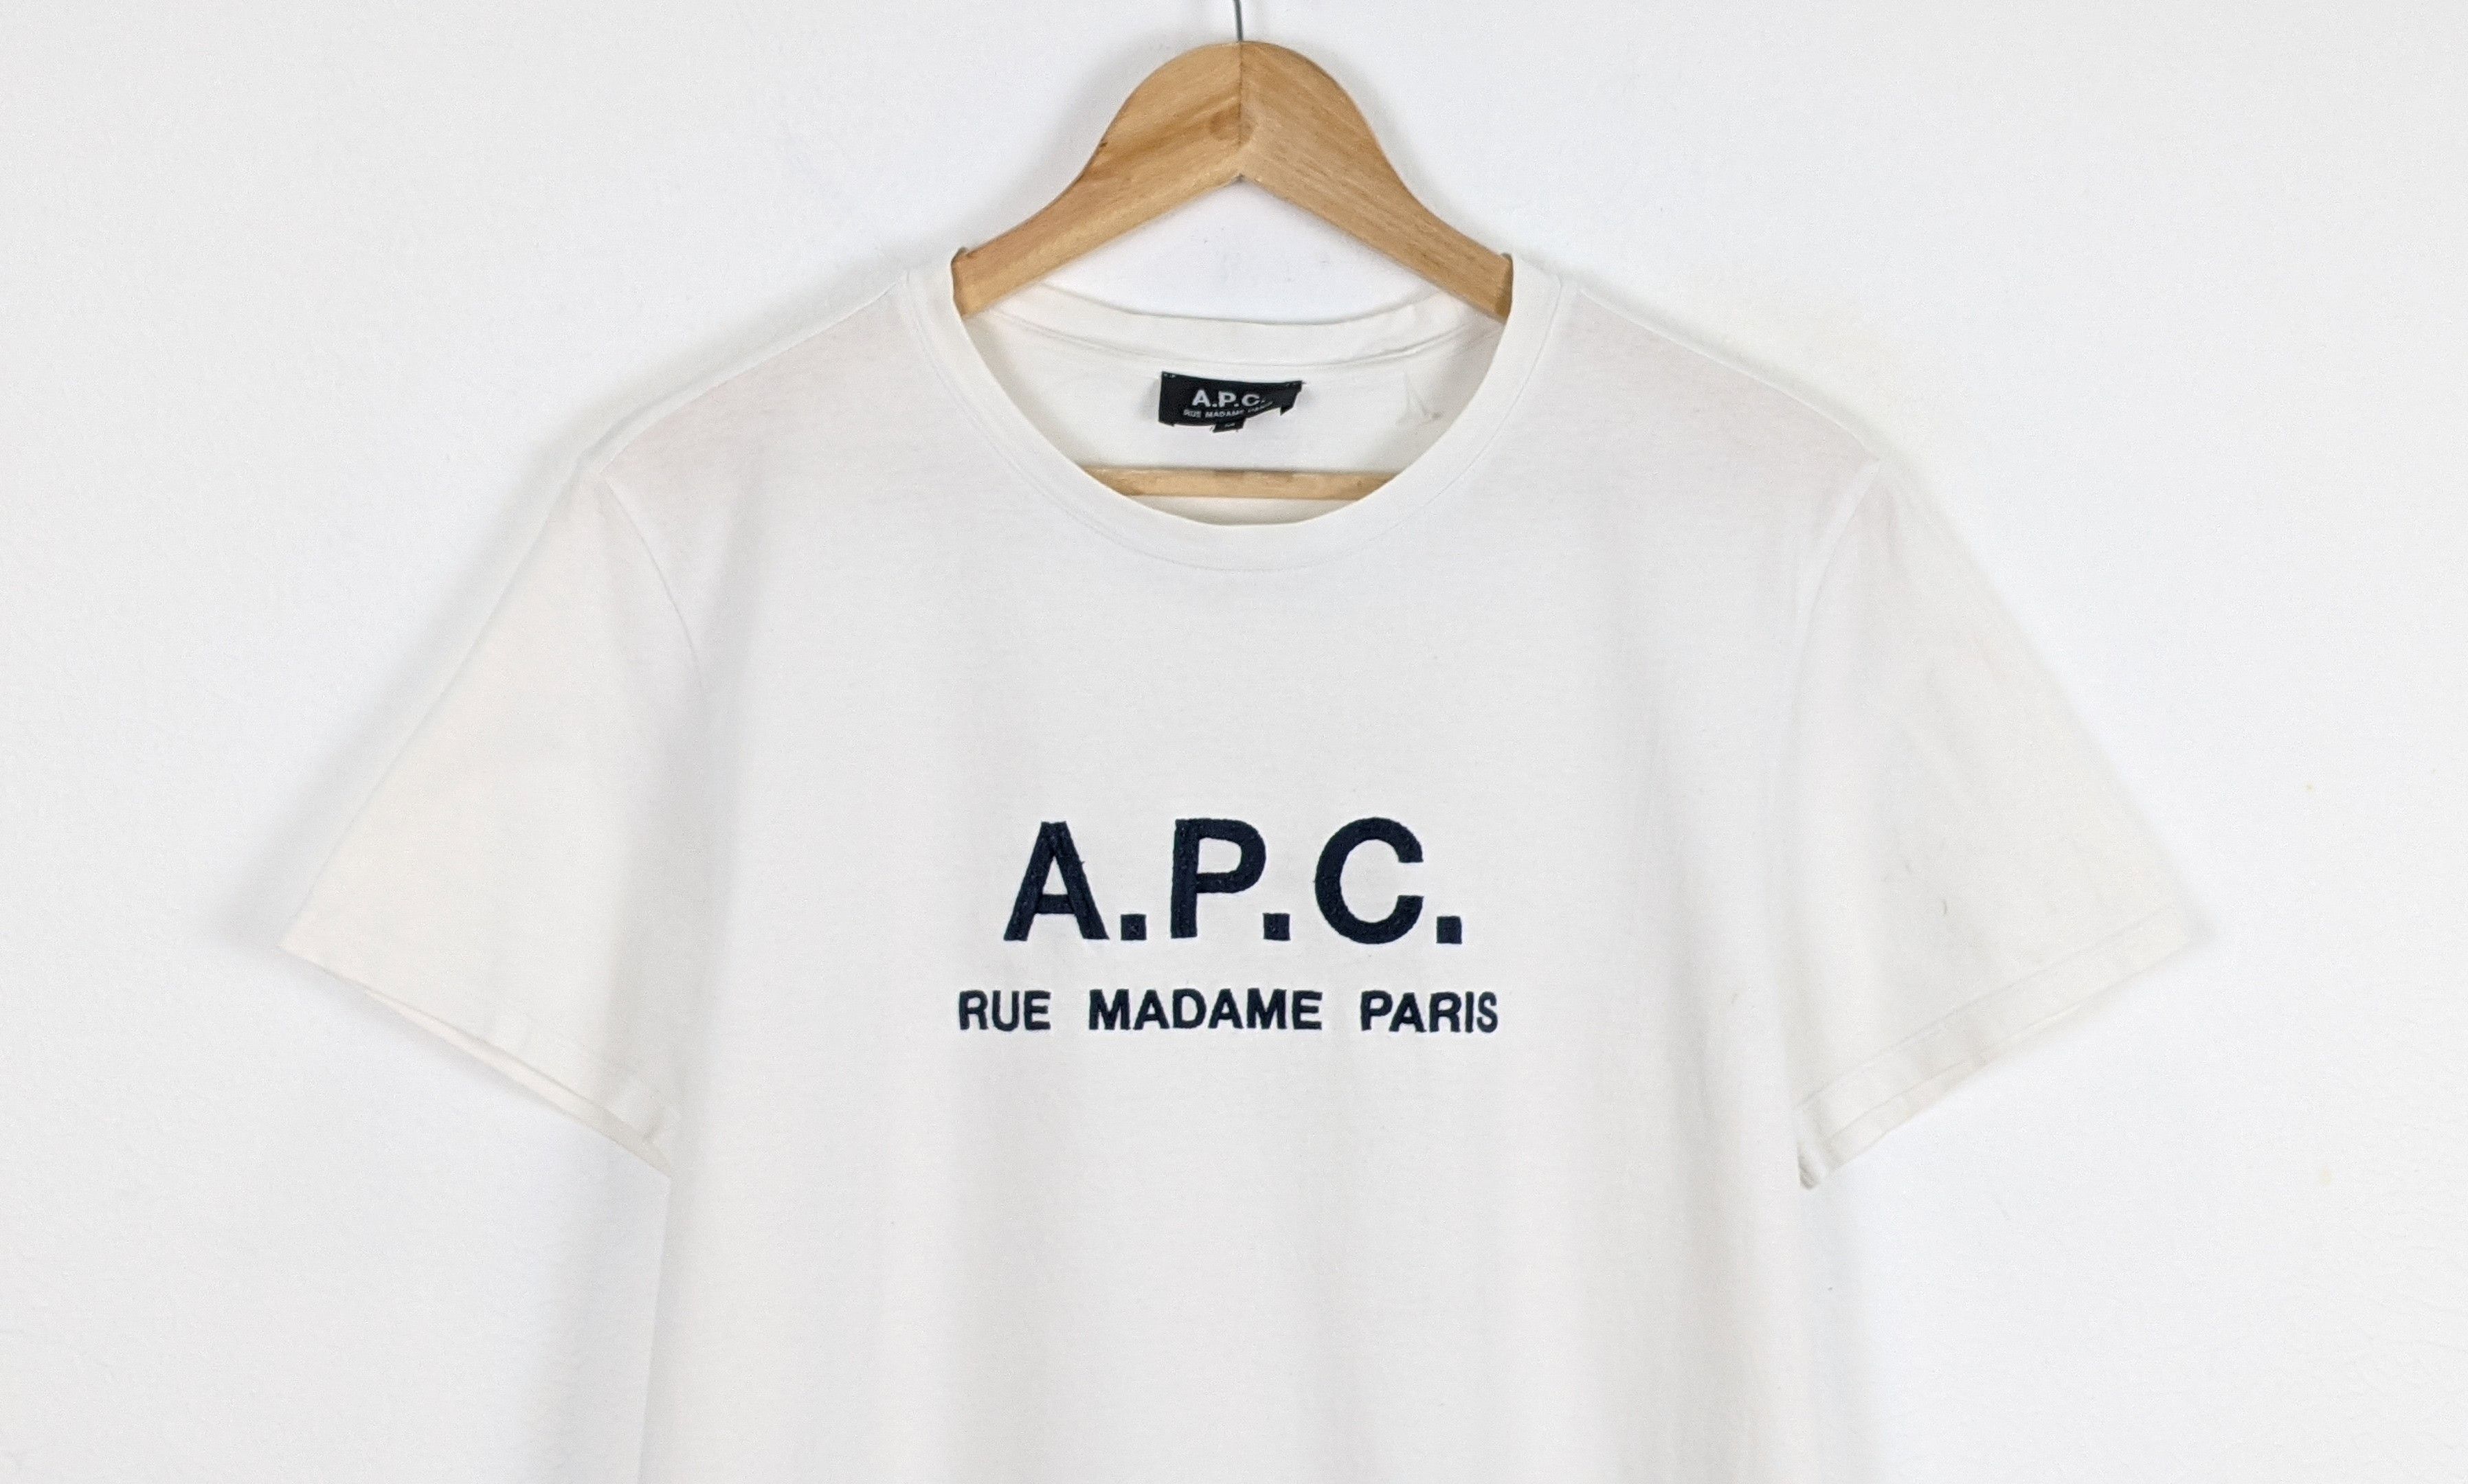 APC Rue Madame Paris shirt - 2